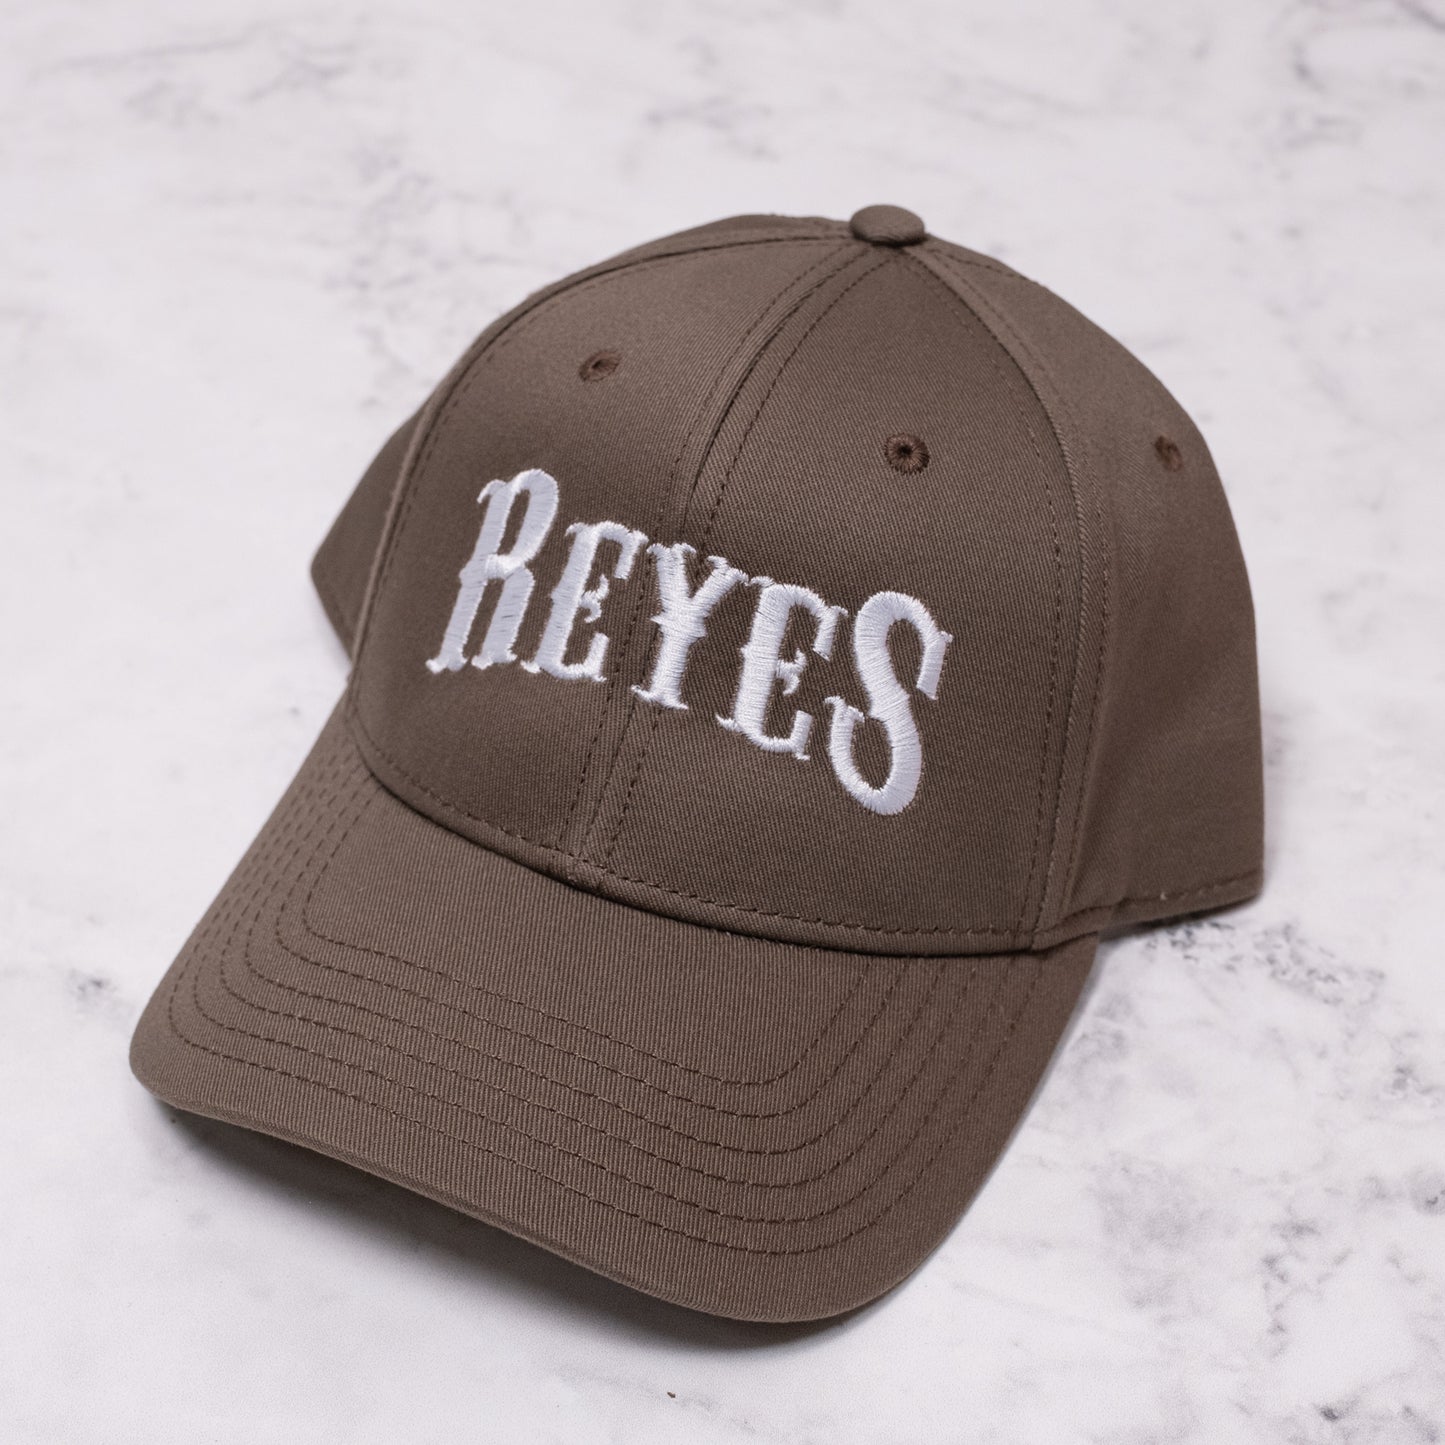 Reyes basecall cap